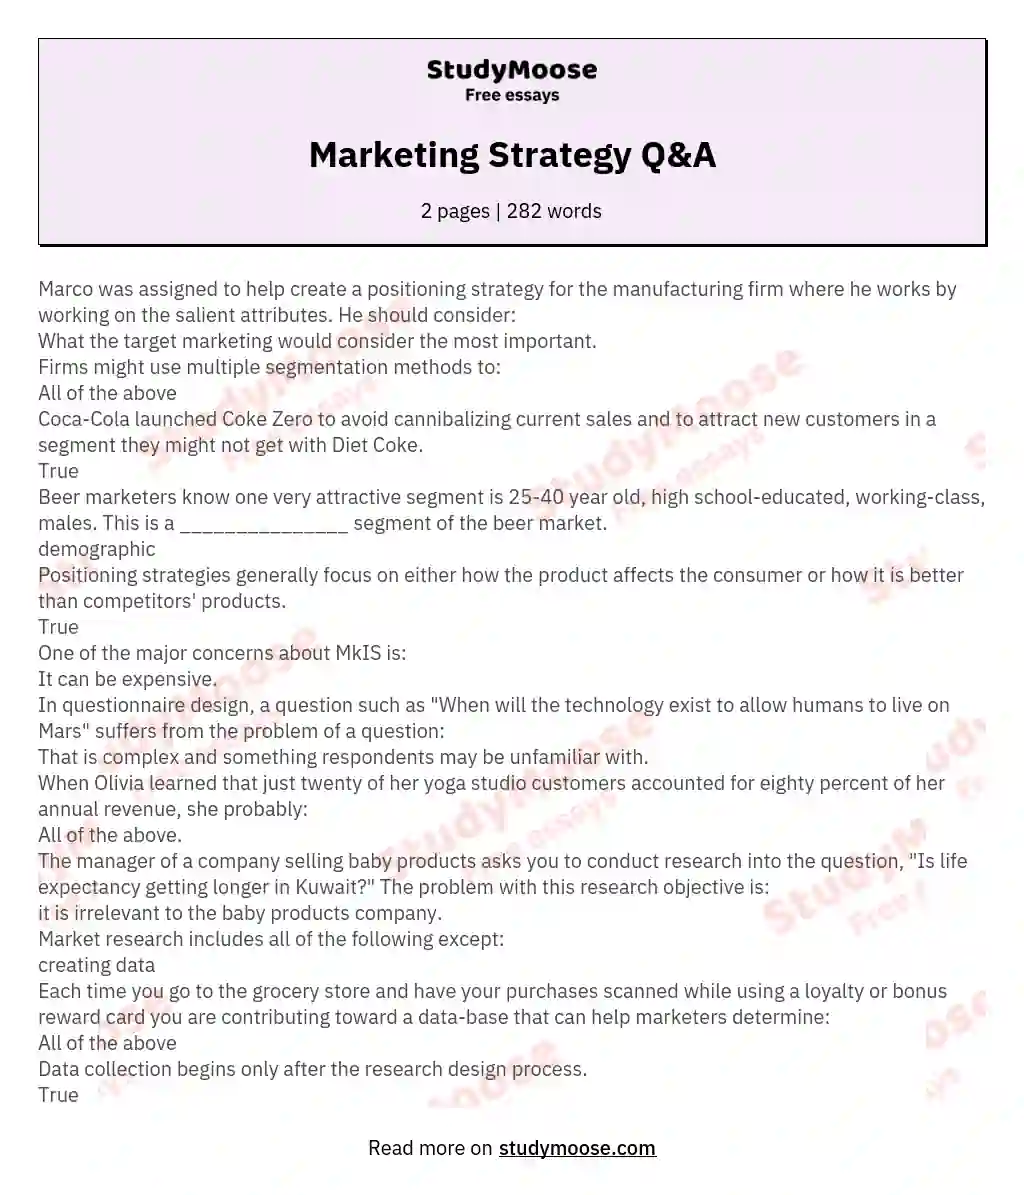 Marketing Strategy Q&A essay